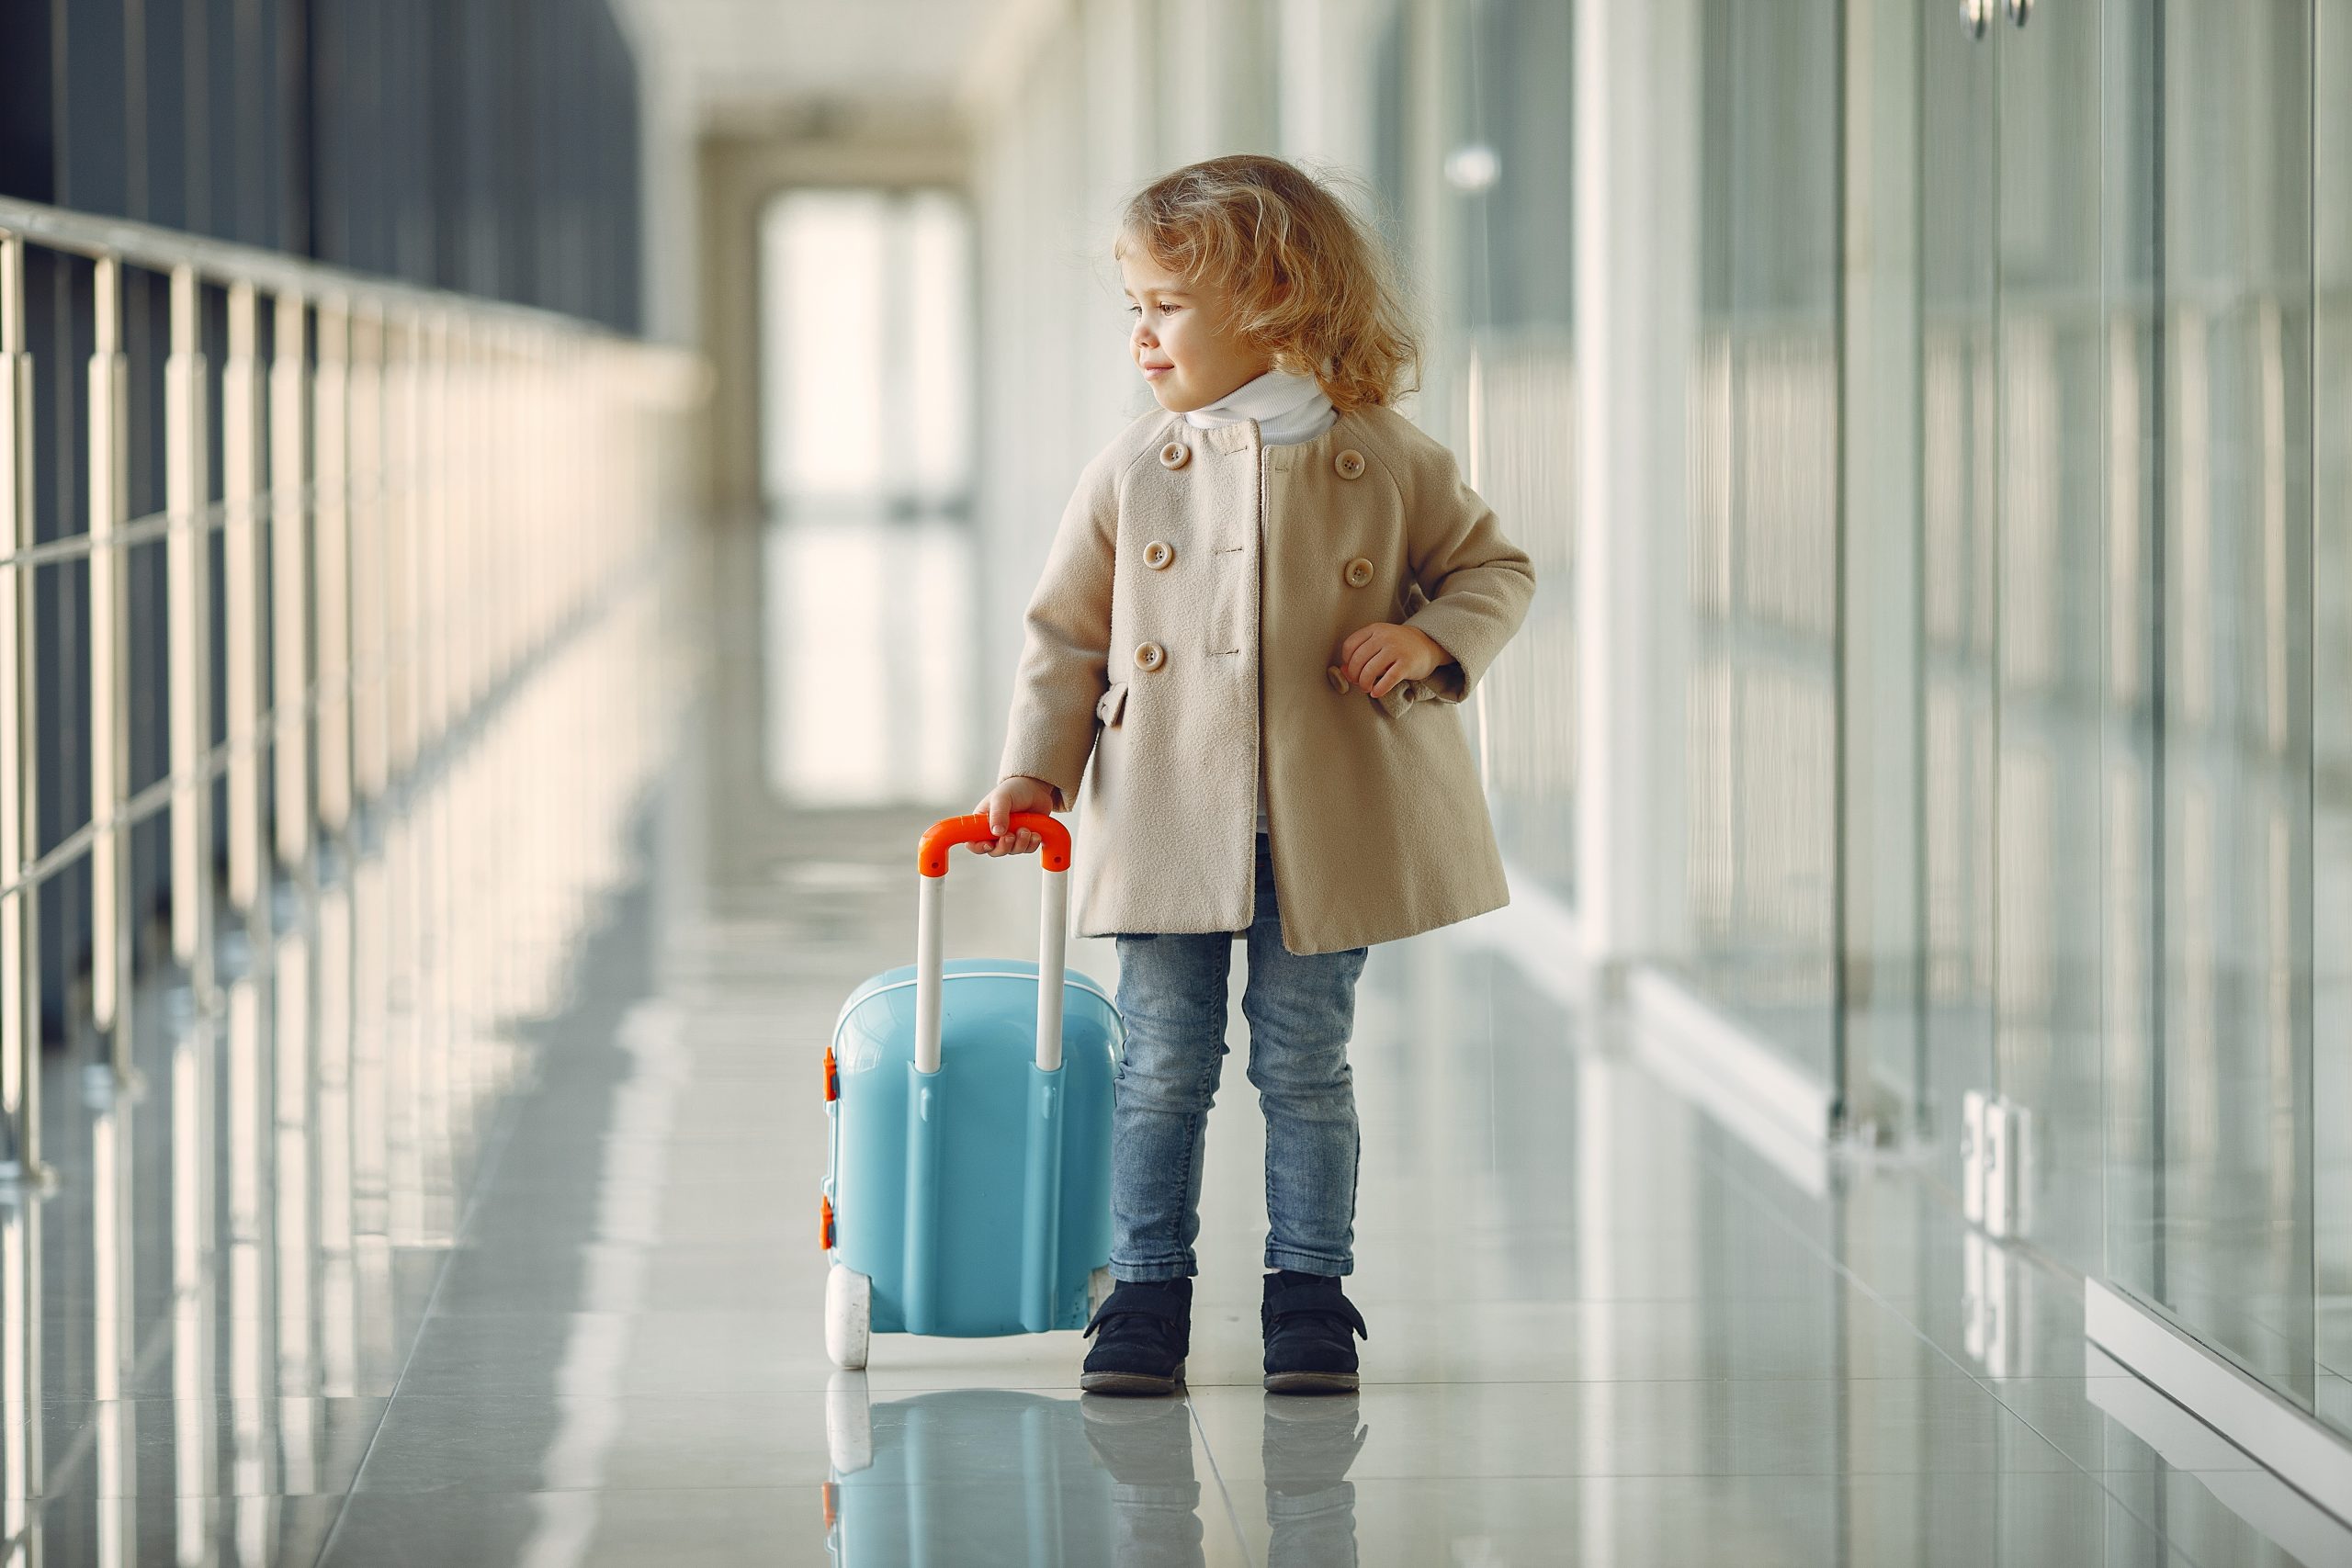 Menor pode viajar sozinho de avião? Quais as condições?